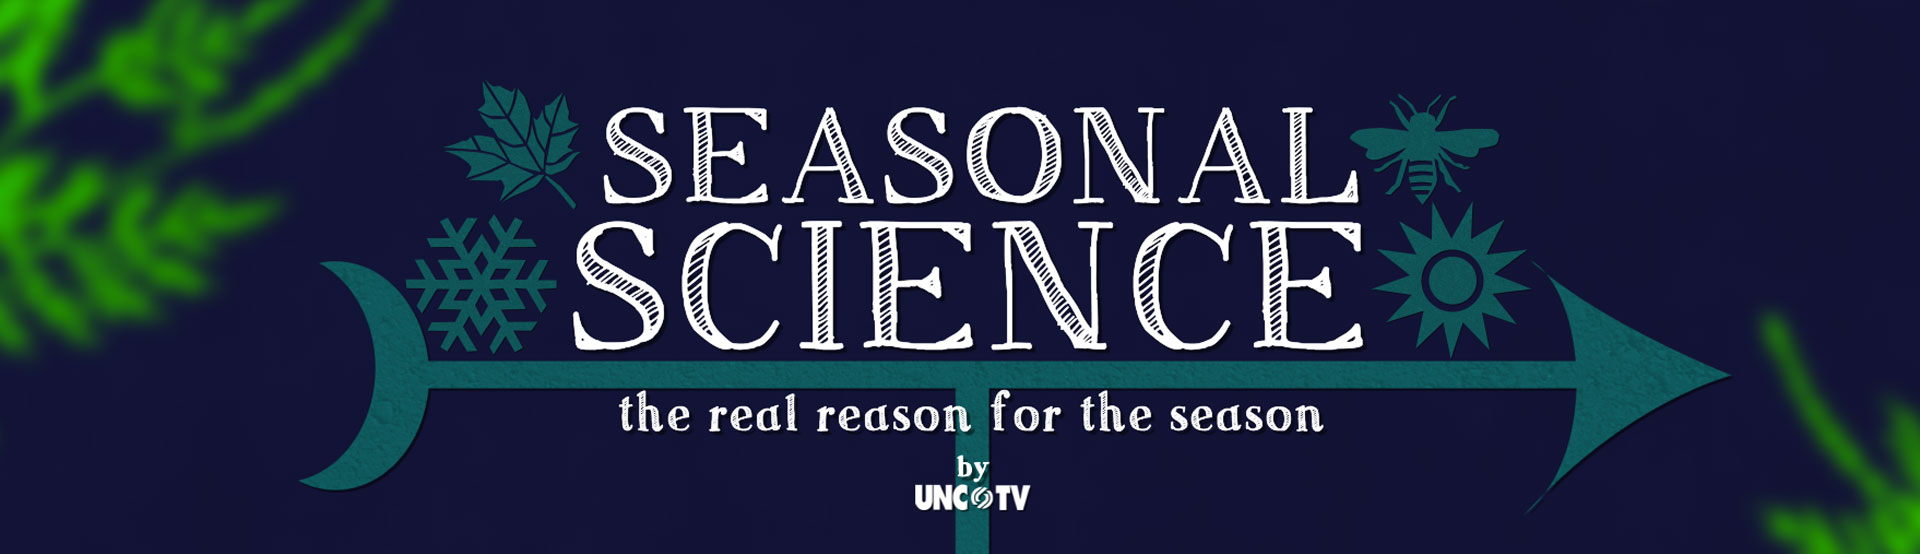 Seasonal Science